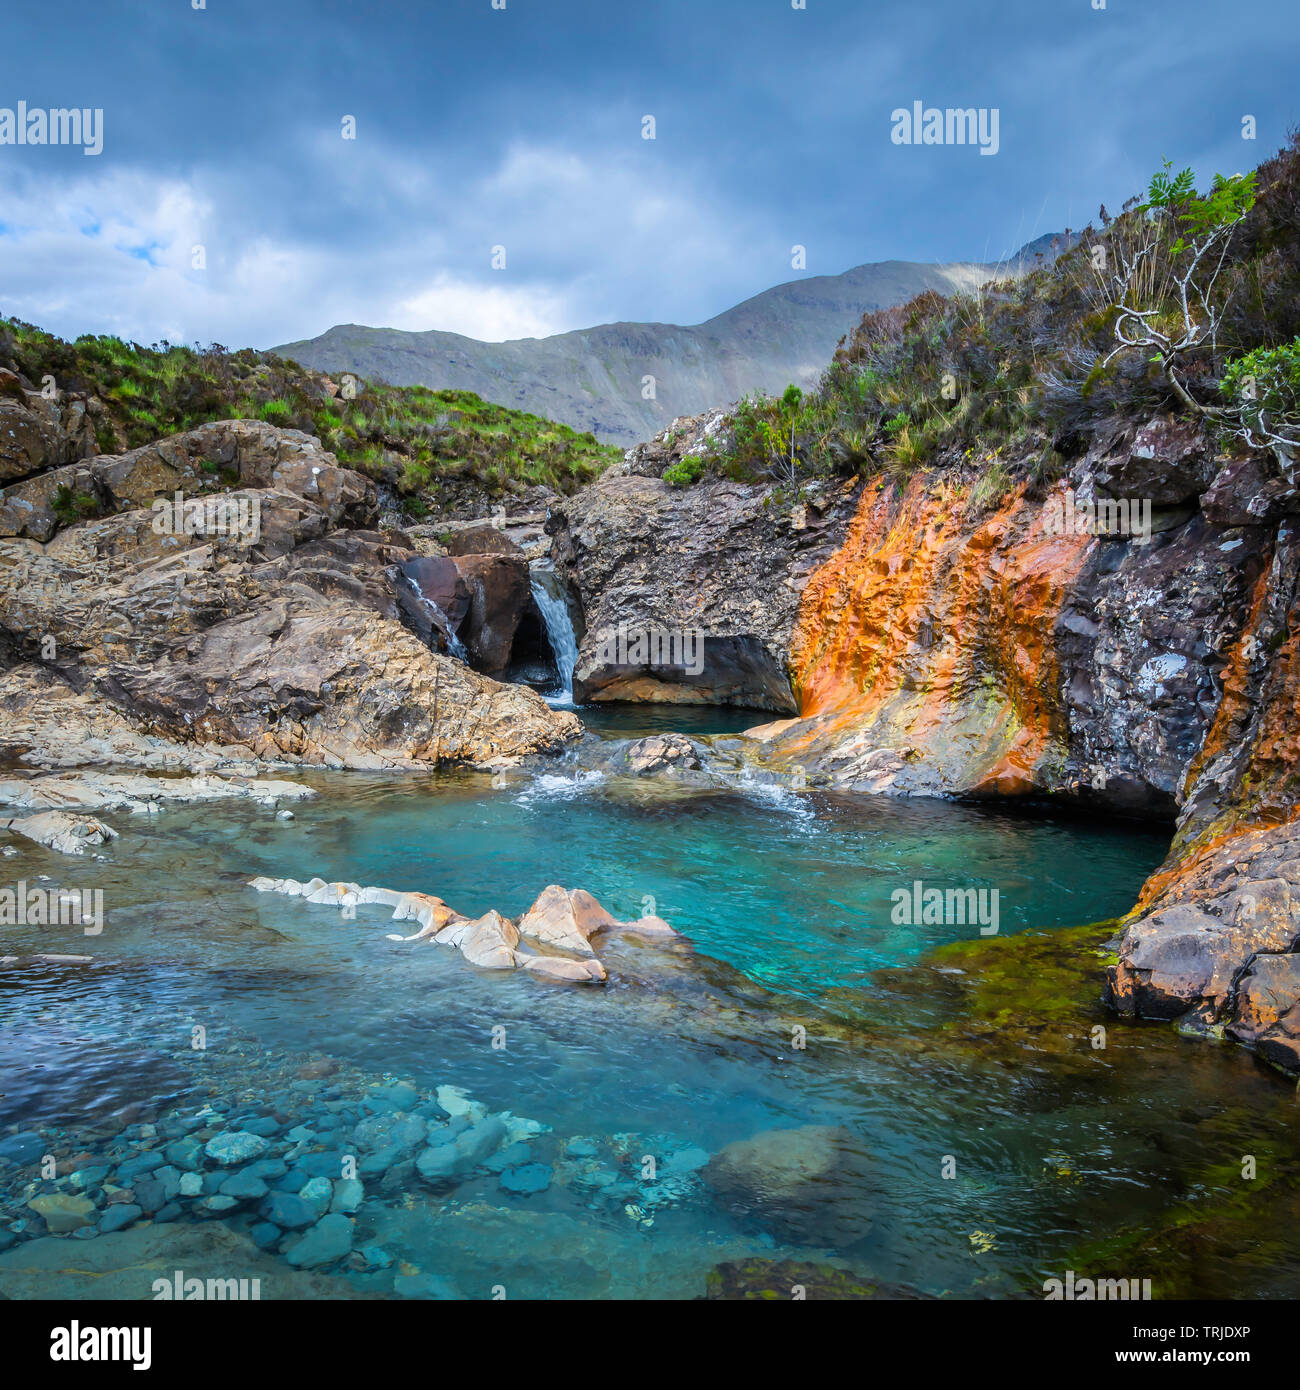 De beaux paysages, l'île de Skye, Écosse.Conte de piscines, bassins avec de l'eau turquoise, cascades et roches colorées.Ethereal paysage, beauté dans la nature. Banque D'Images